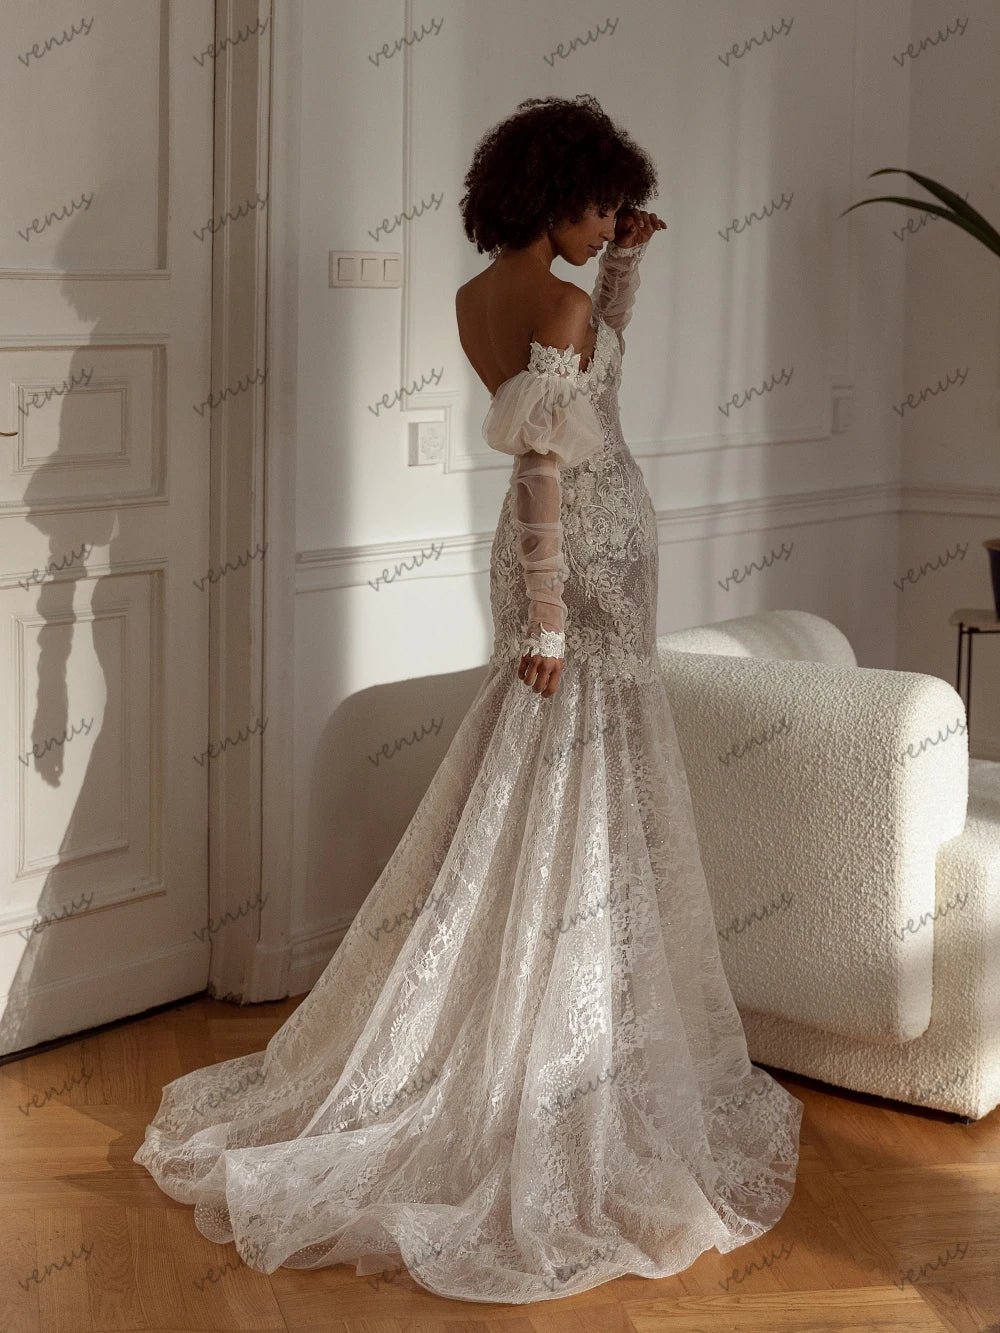 Exquisite Wedding Dresses Gorgeous Bridal Gowns Lace Appliques Sheath Mermaid Floor Length Robe For Bride Vestidos De Novia